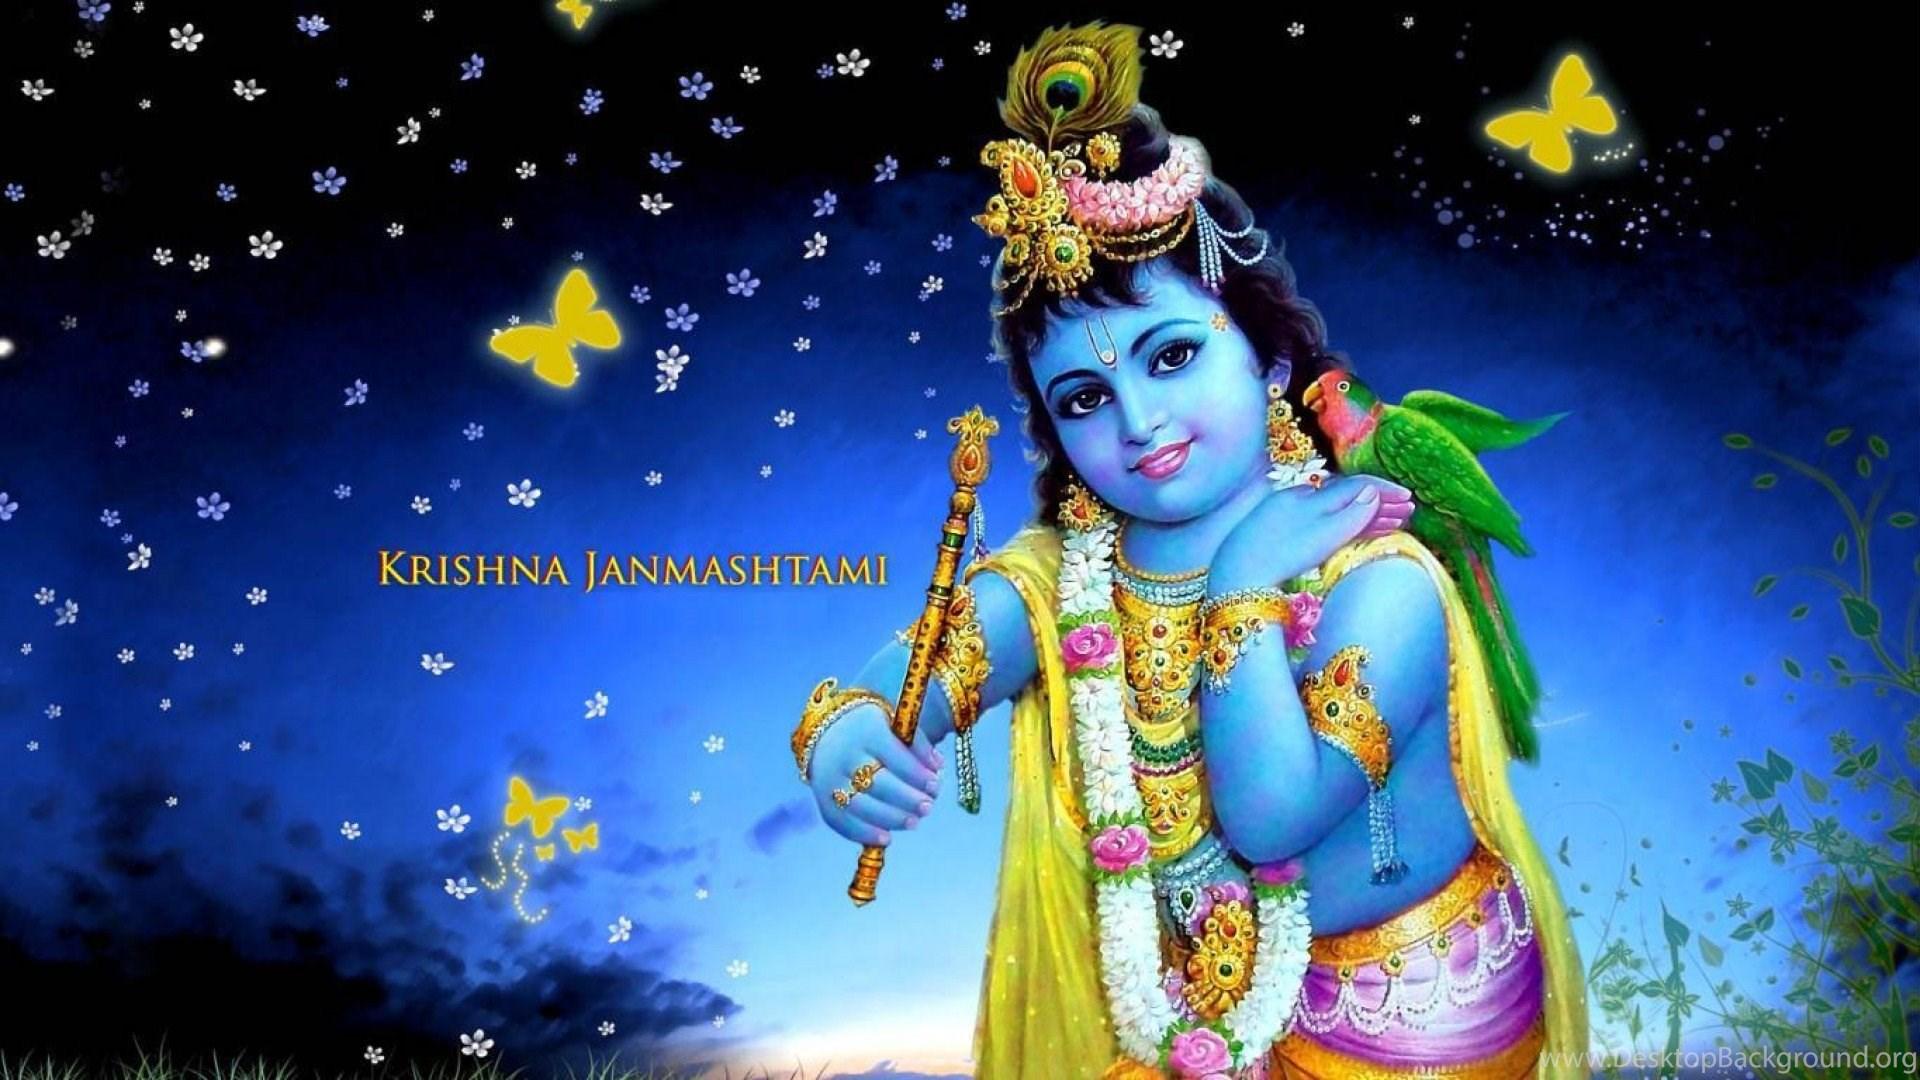 Lord Krishna Background - Ultra Hd Krishna Images Hd - 1920x1080 Wallpaper  